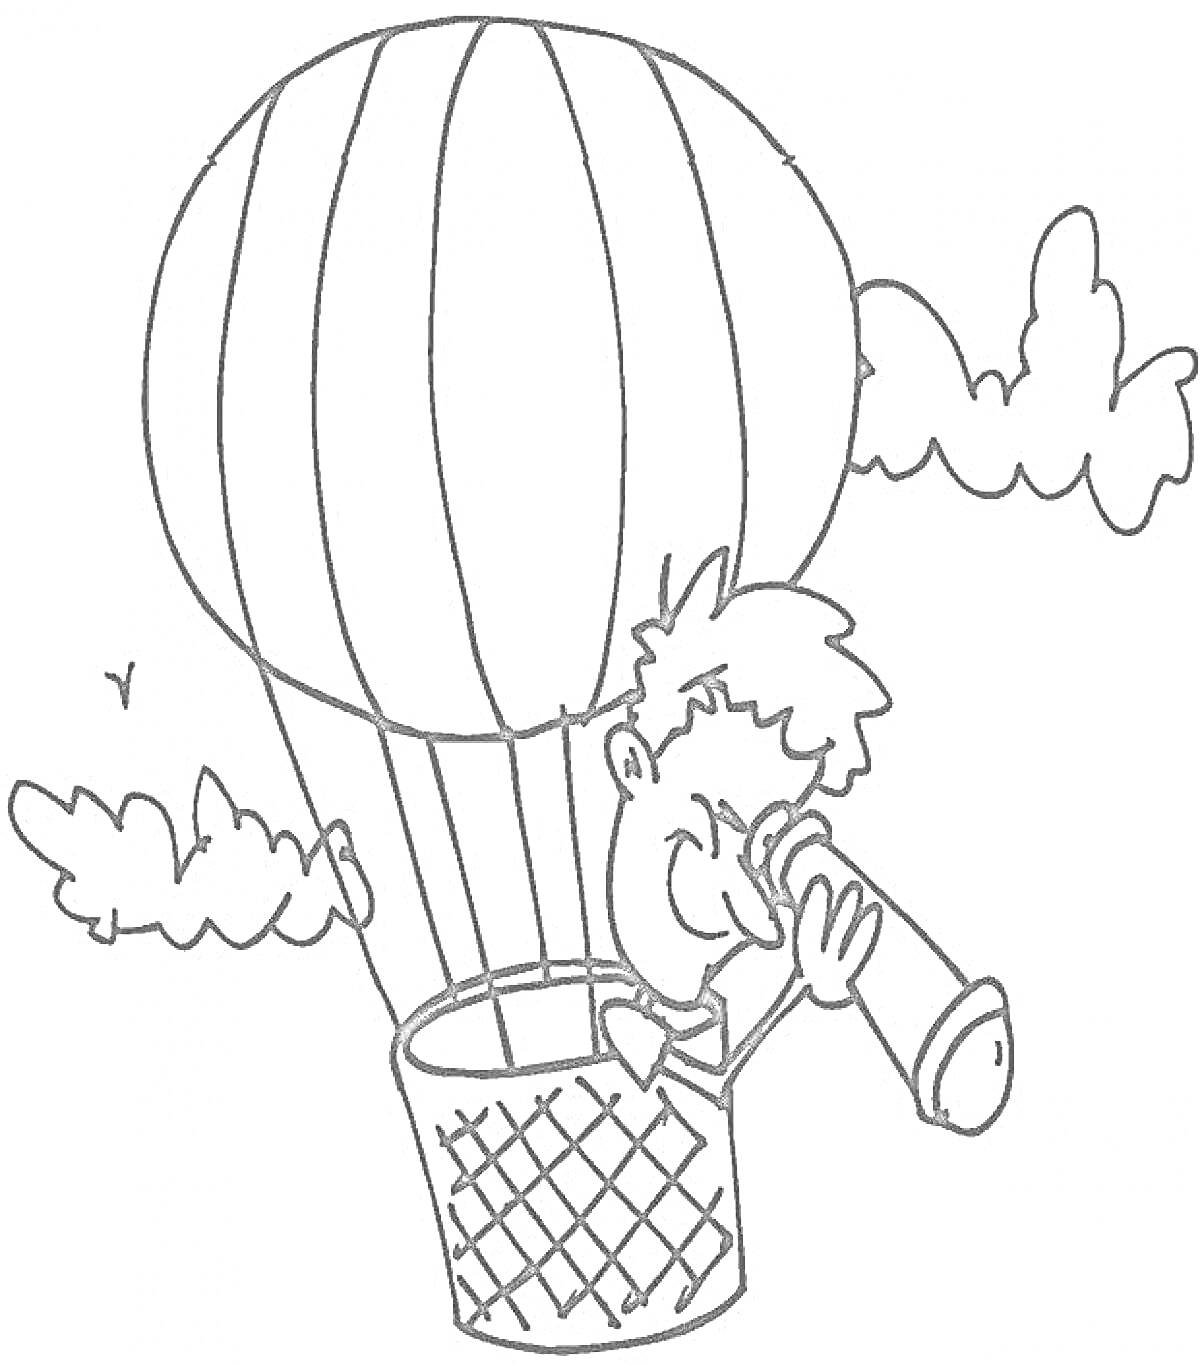 Воздушный шар с мальчиком в корзине и подзорной трубой, окруженный облаками